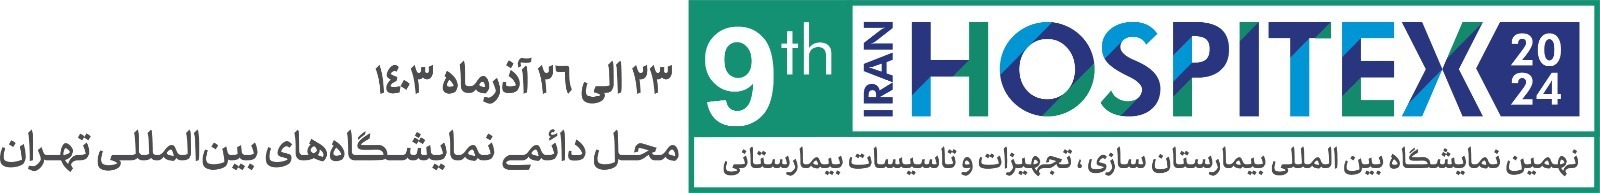 نمایشگاه بیمارستان سازی، تجهیزات و تاسیسات بیمارستانی – ایران هاسپیتکس